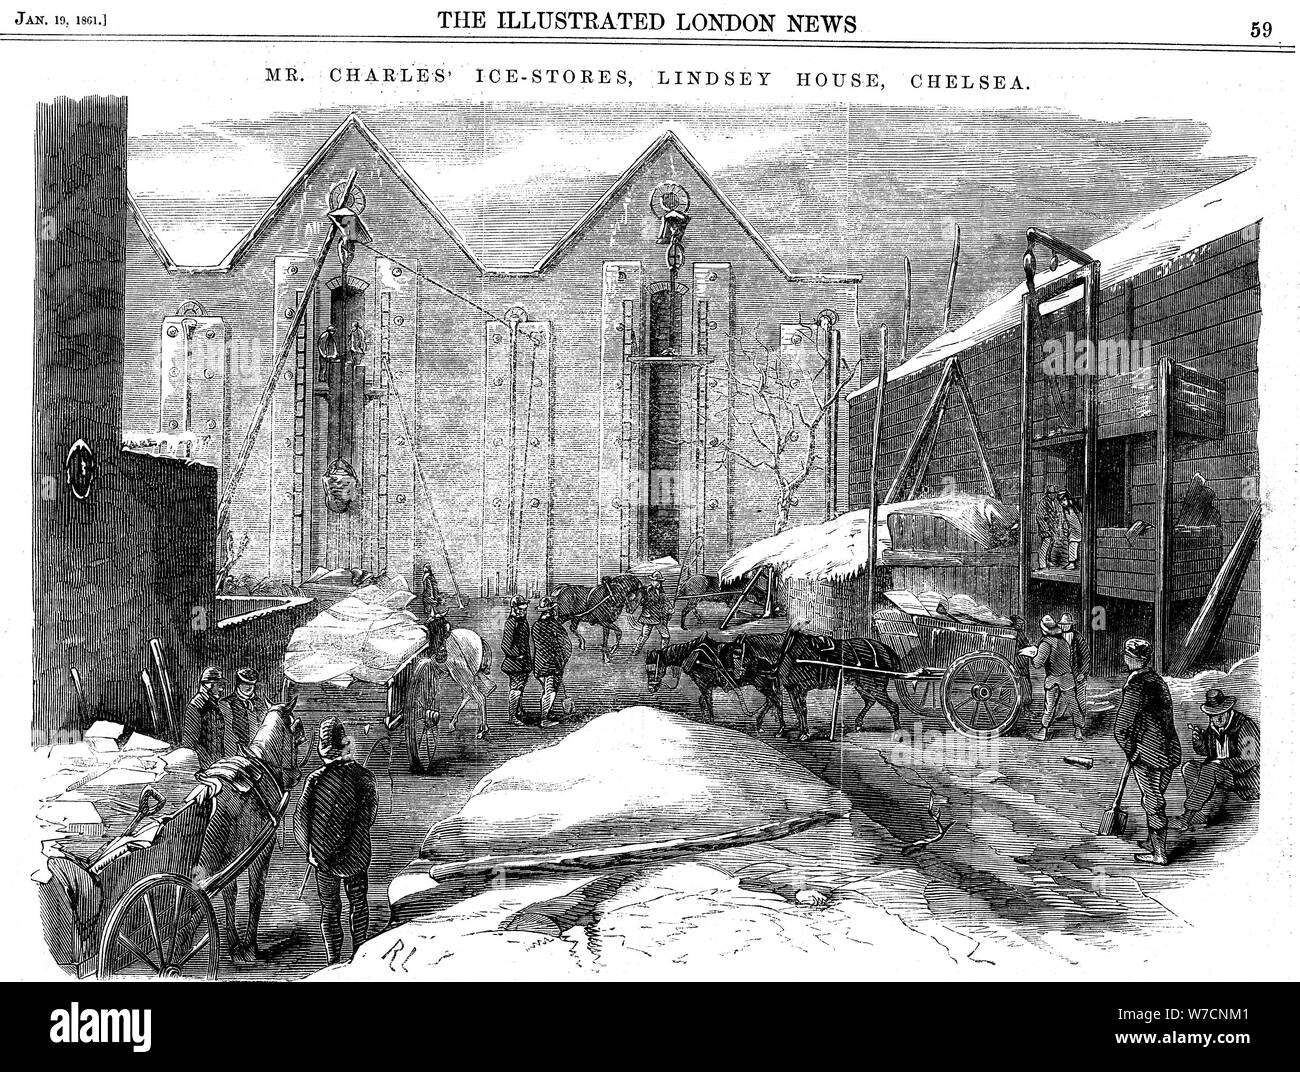 La memorizzazione di ghiaccio in capannoni isolati a Charles's Ice Store, a Chelsea, Londra, 1861. Artista: sconosciuto Foto Stock